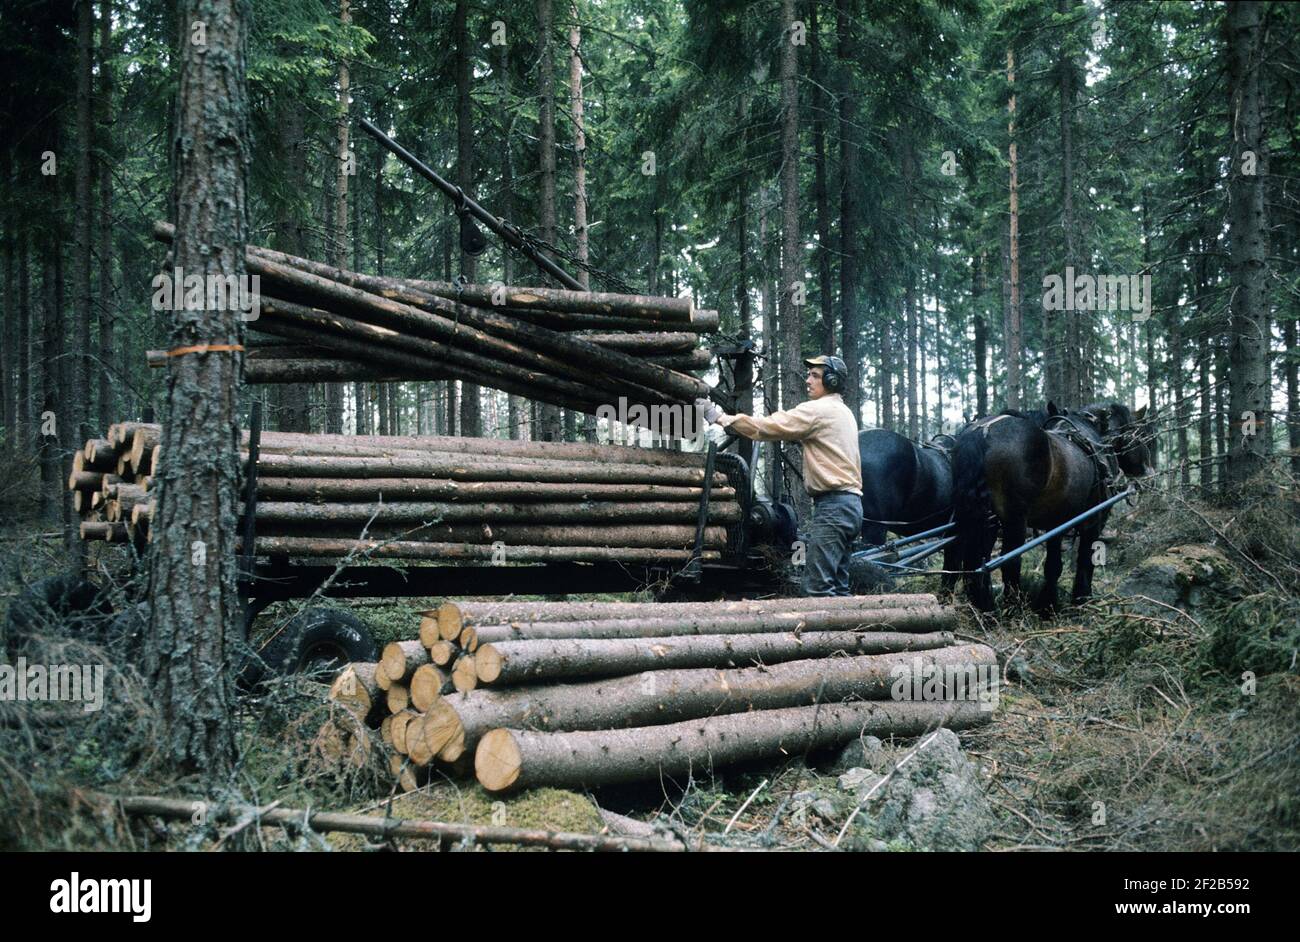 Arbeiten im Wald in der 1970s. Ein Mann arbeitet in seinem Wald und schneidet Bäume ab, um sie auf einem mit seinem Pferd zu seinem Haus oder dem Sägewerk zu transportieren. Zwei Pferde ziehen den Wagen mit Holzstämmen beladen. Der Kran wird von einem 2-Takt-Motor und einer Hydraulikpumpe angetrieben, die das Be- und Entladen des Holzes erleichtert. Schweden 1975 Stockfoto